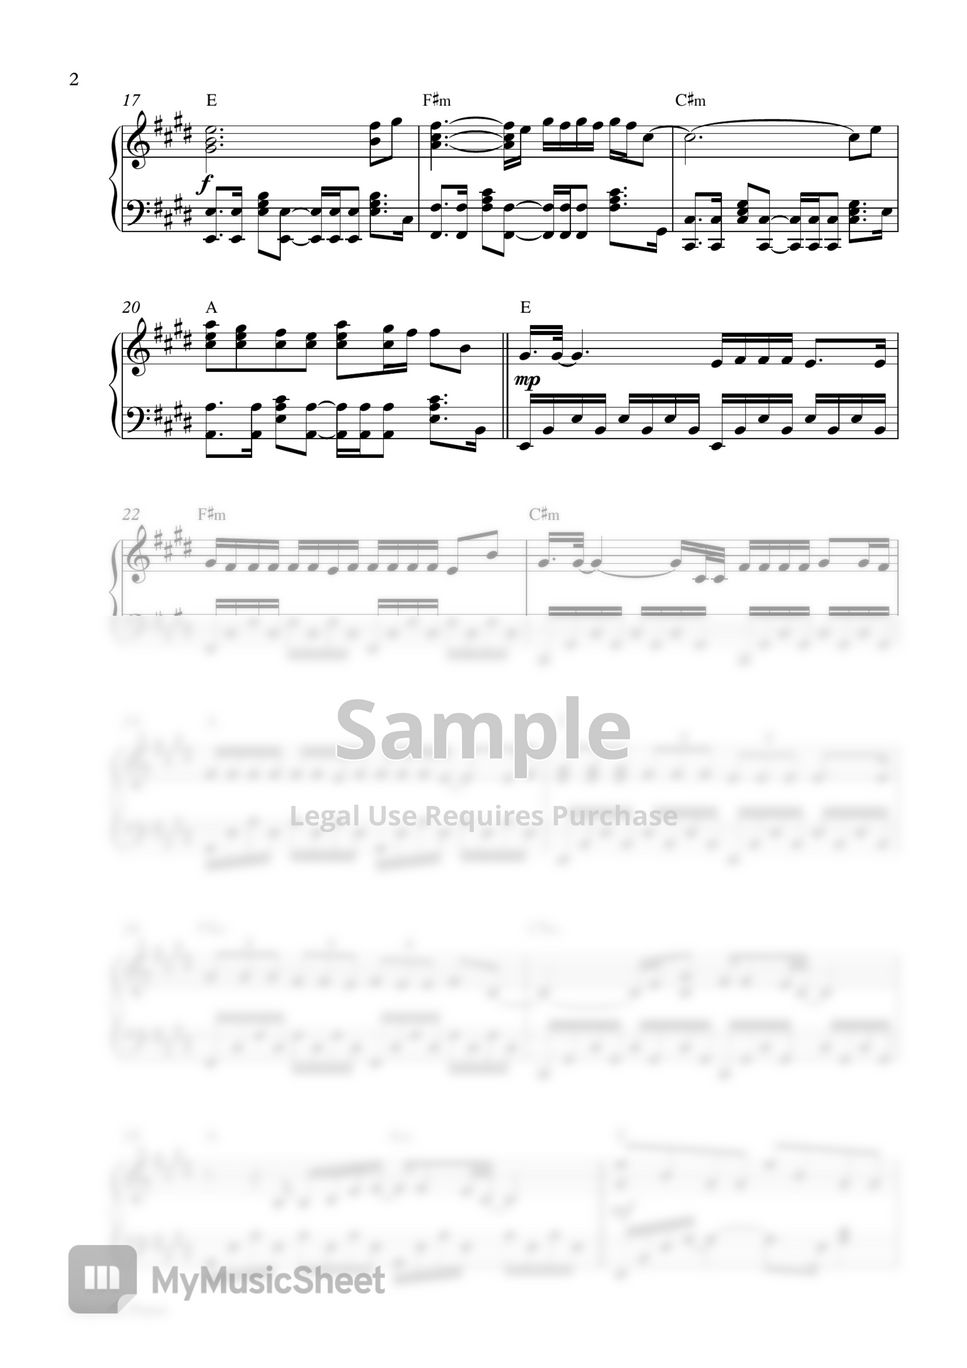 Shawn Mendes - Wonder (Piano Sheet) by Pianella Piano